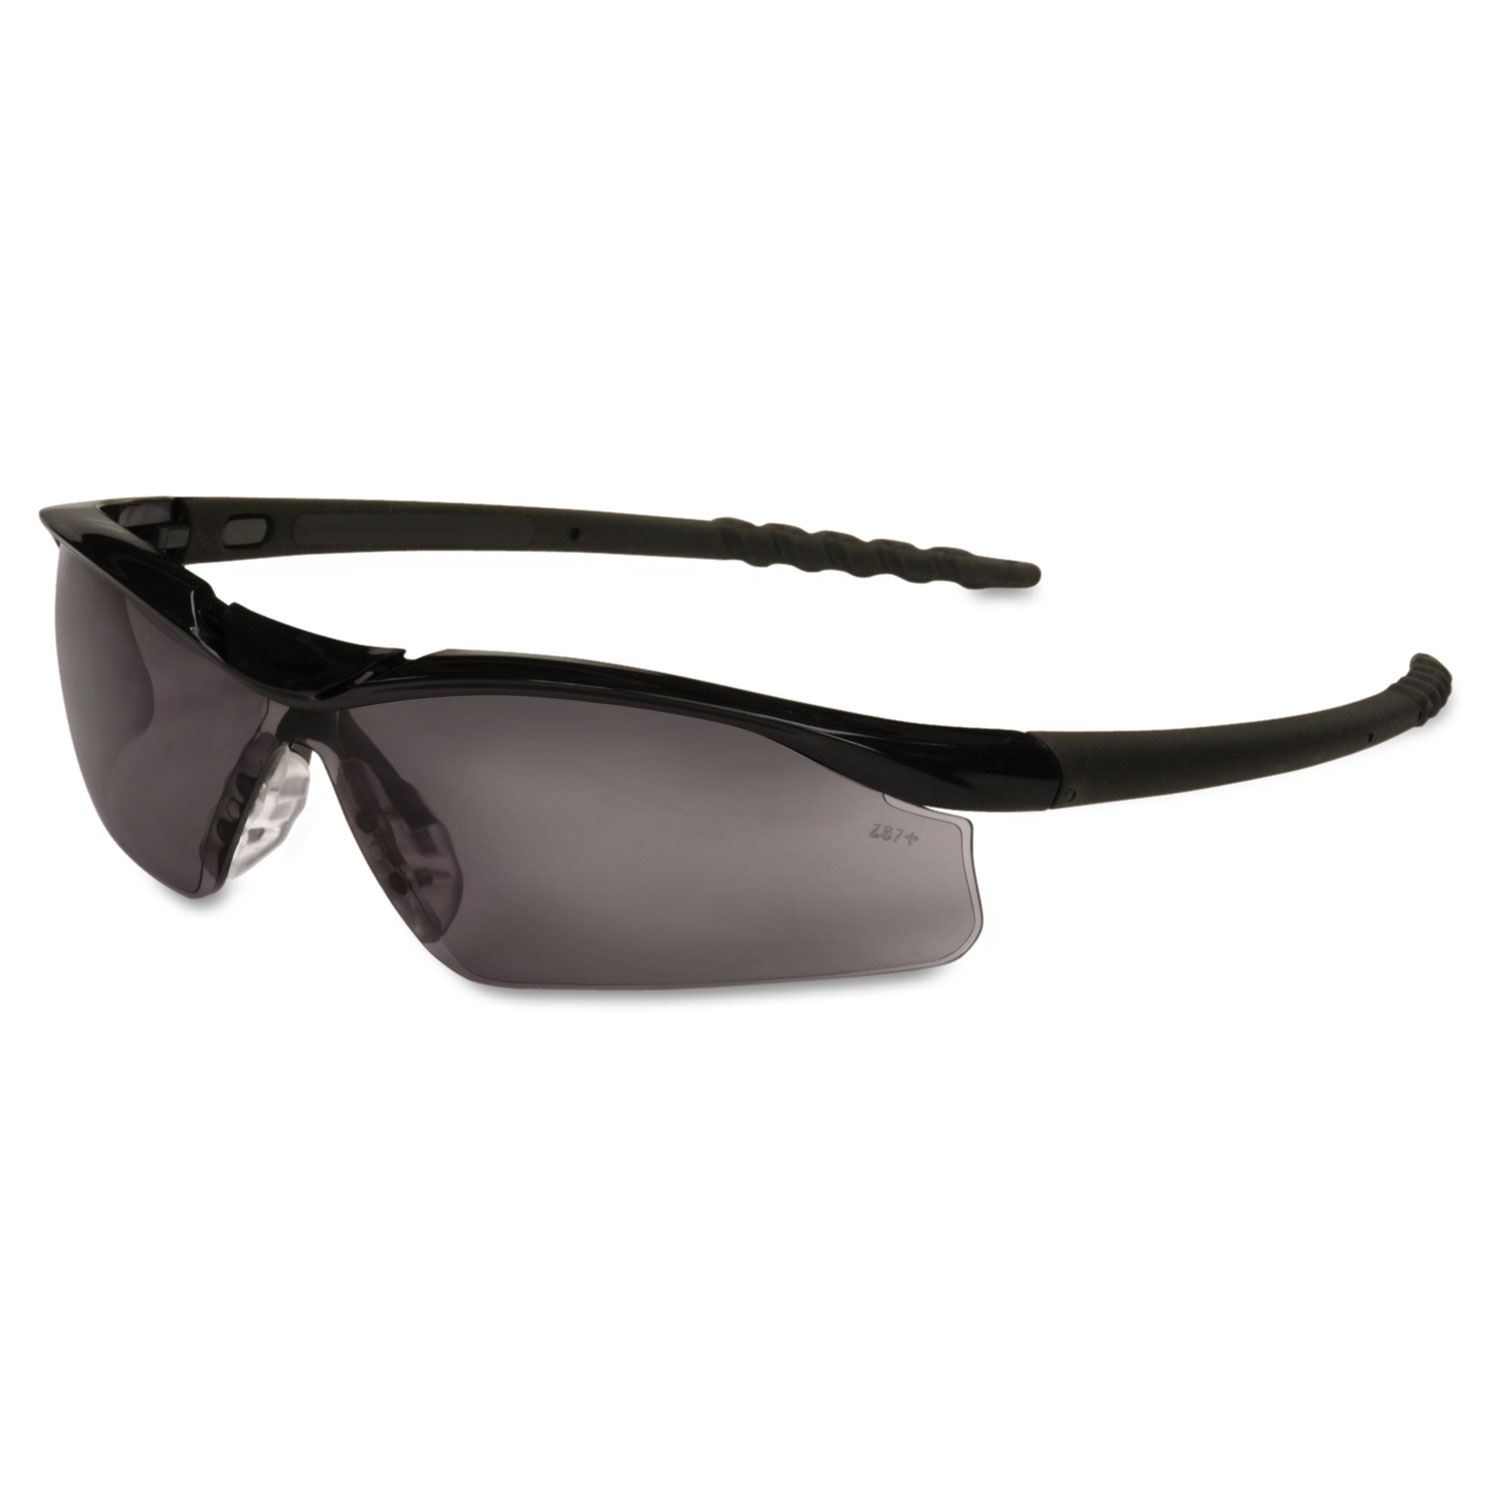  MCR Safety DL112 Dallas Wraparound Safety Glasses, Black Frame, Gray Lens (CRWDL112) 